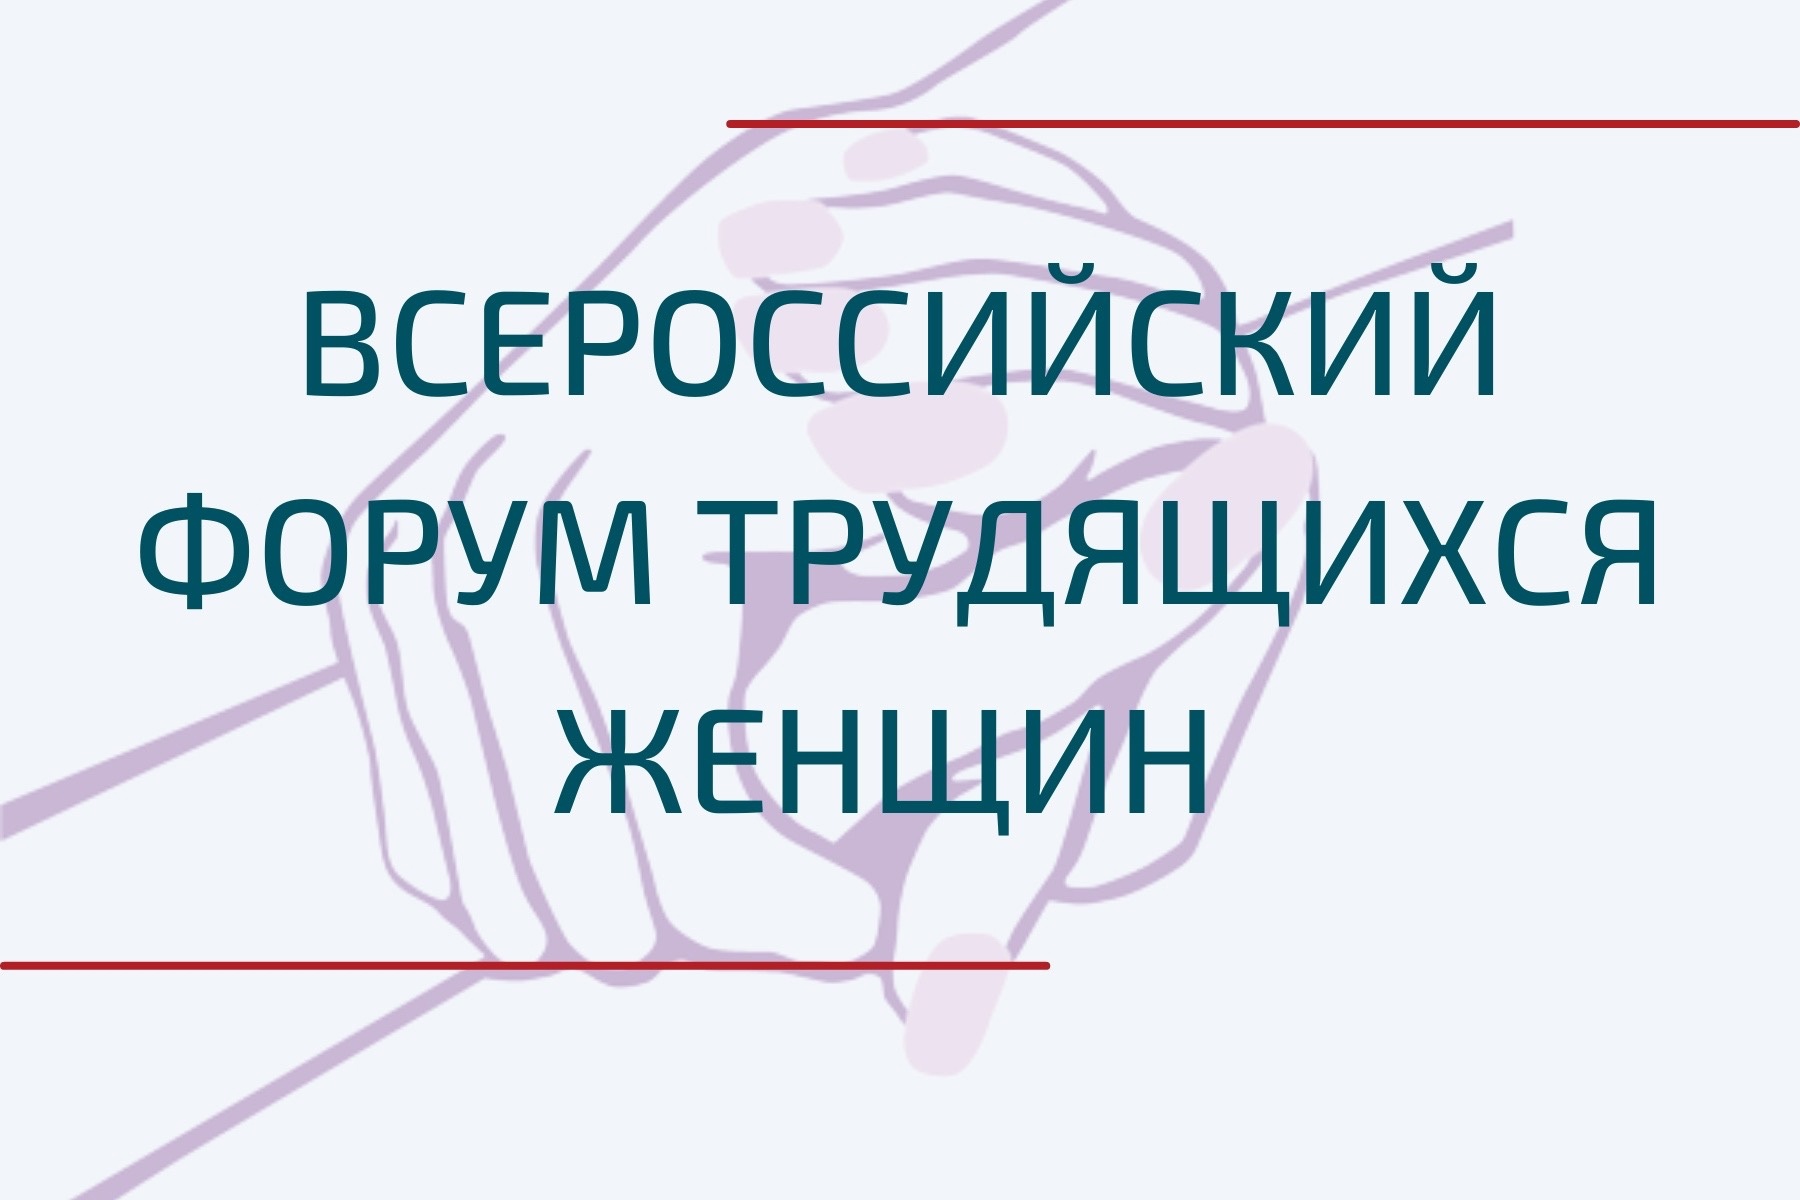 В Москве открылся Всероссийский форум трудящихся женщин